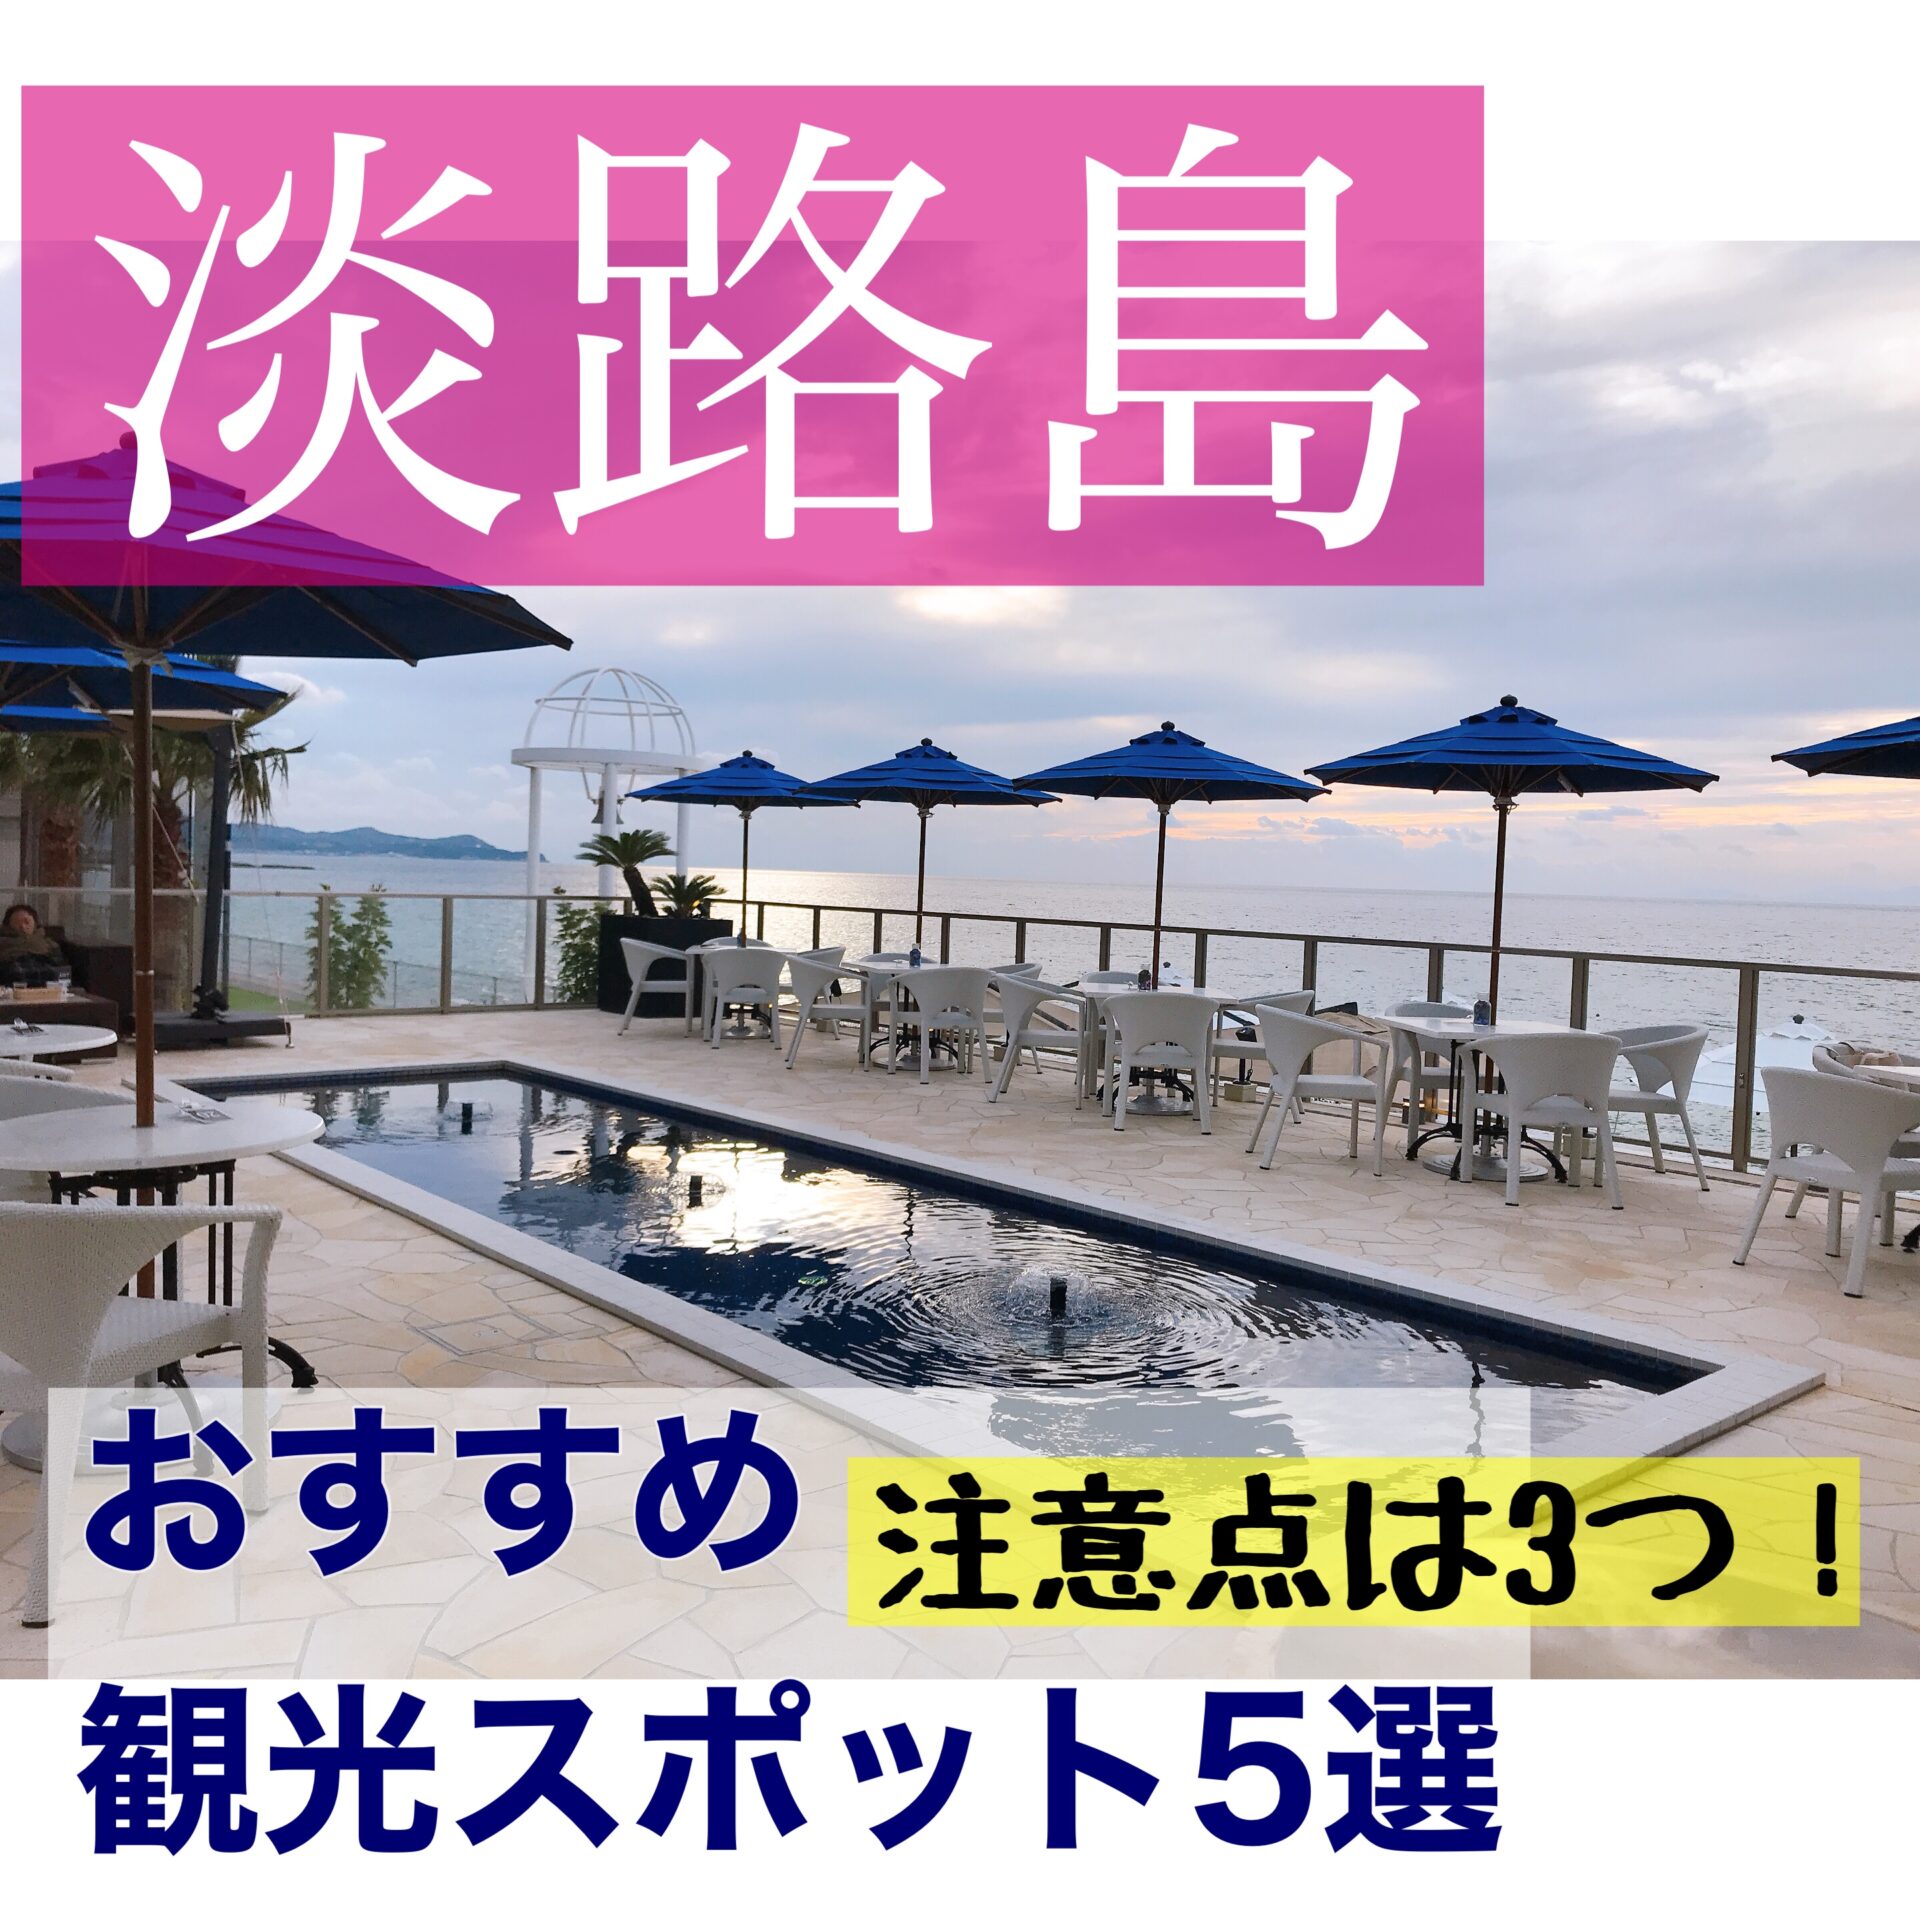 淡路島旅行 おすすめ観光スポット5選 注意すべきポイント3つ もふたろ子連れ旅行ブログ